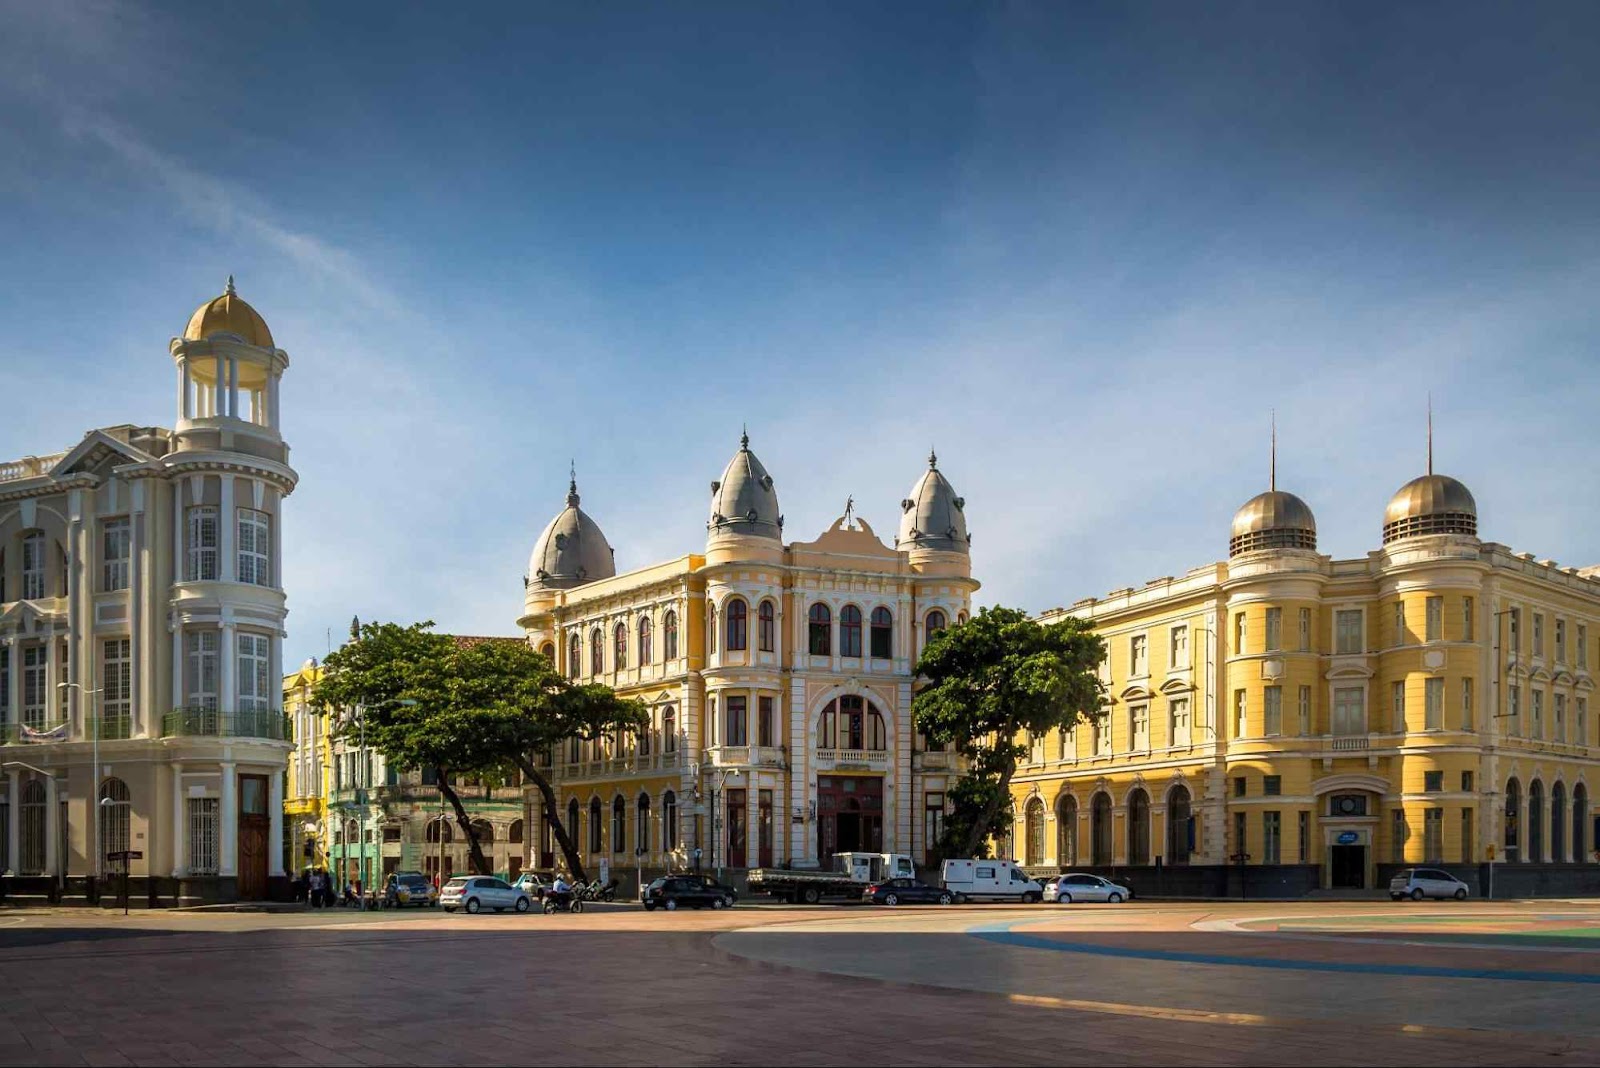 Construções antigas que ficam ao redor da Praça do Marco Zero, no Centro Histórico do Recife. Elas são casarões e palacetes de três andares, com torres arredondadas e muitas janelas, no estilo arquitetônico holandês.